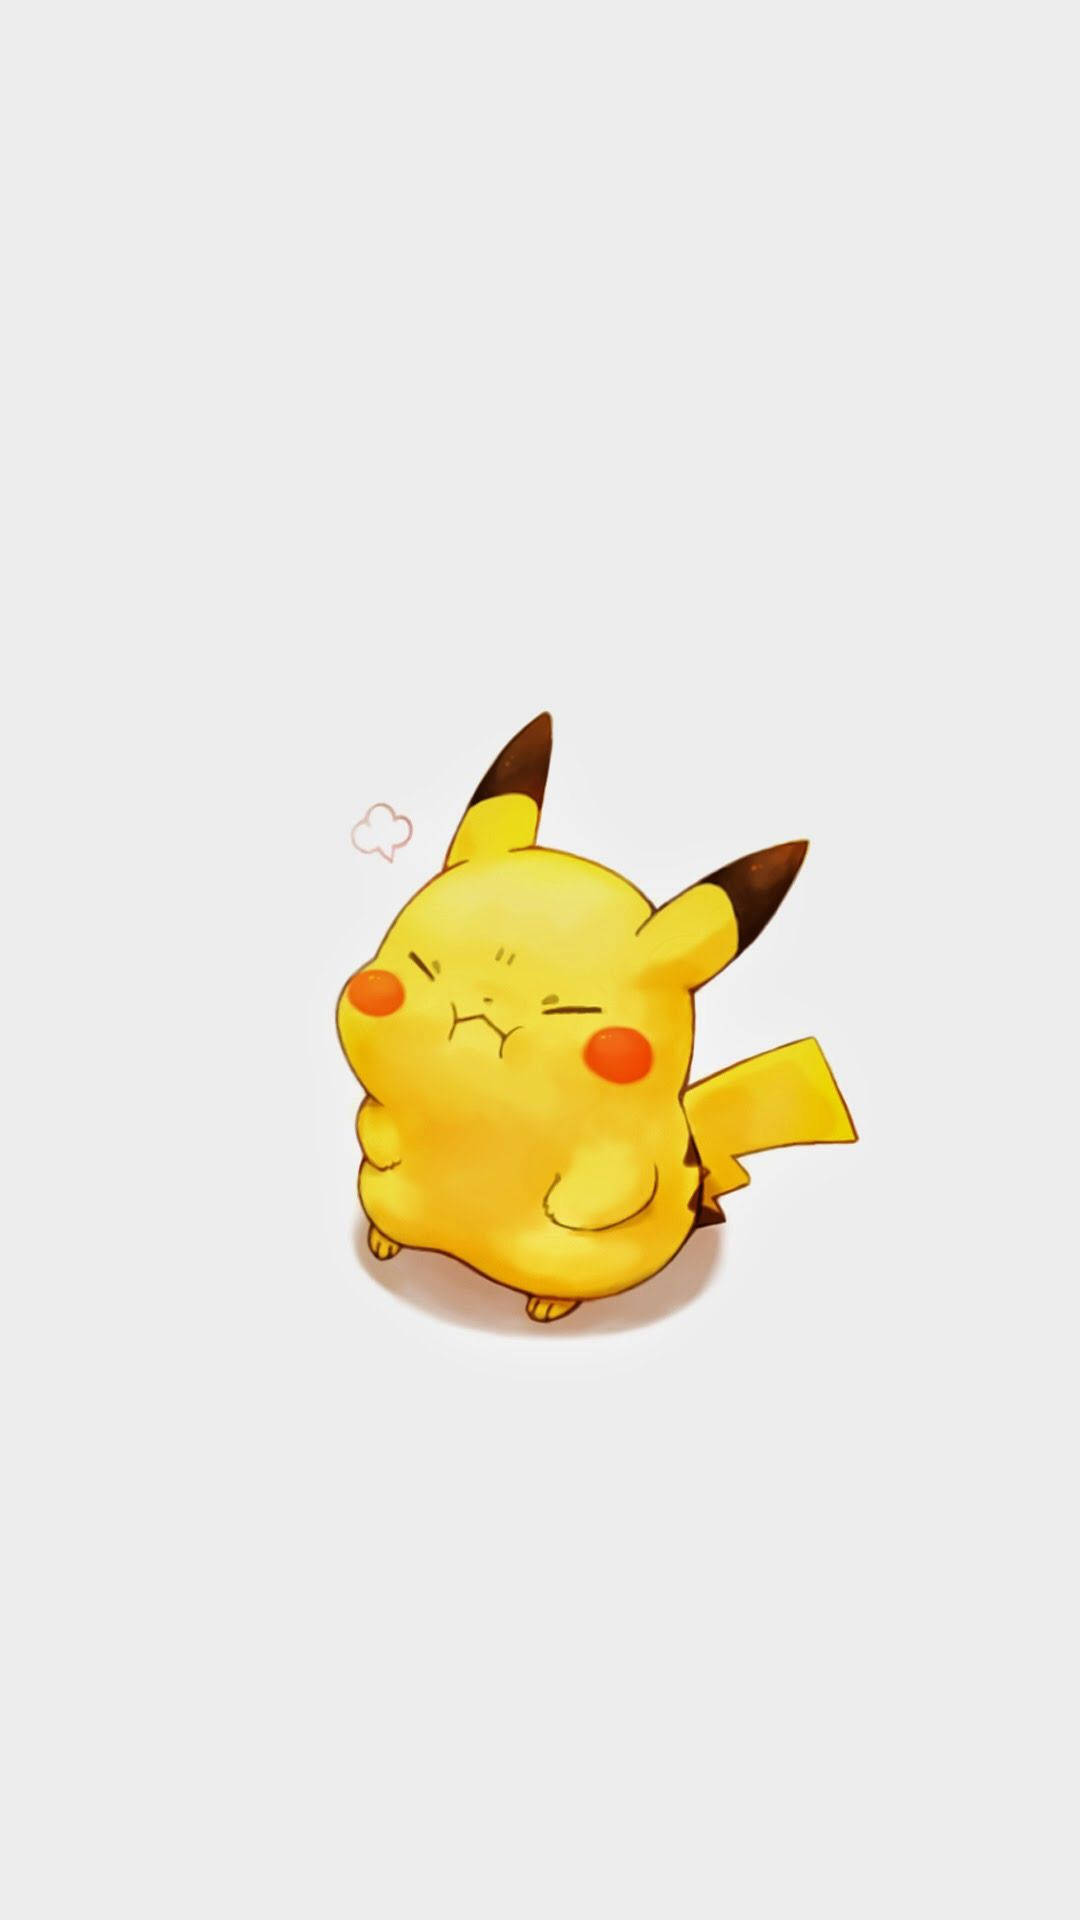 Cute Pikachu Cartoon Iphone Background